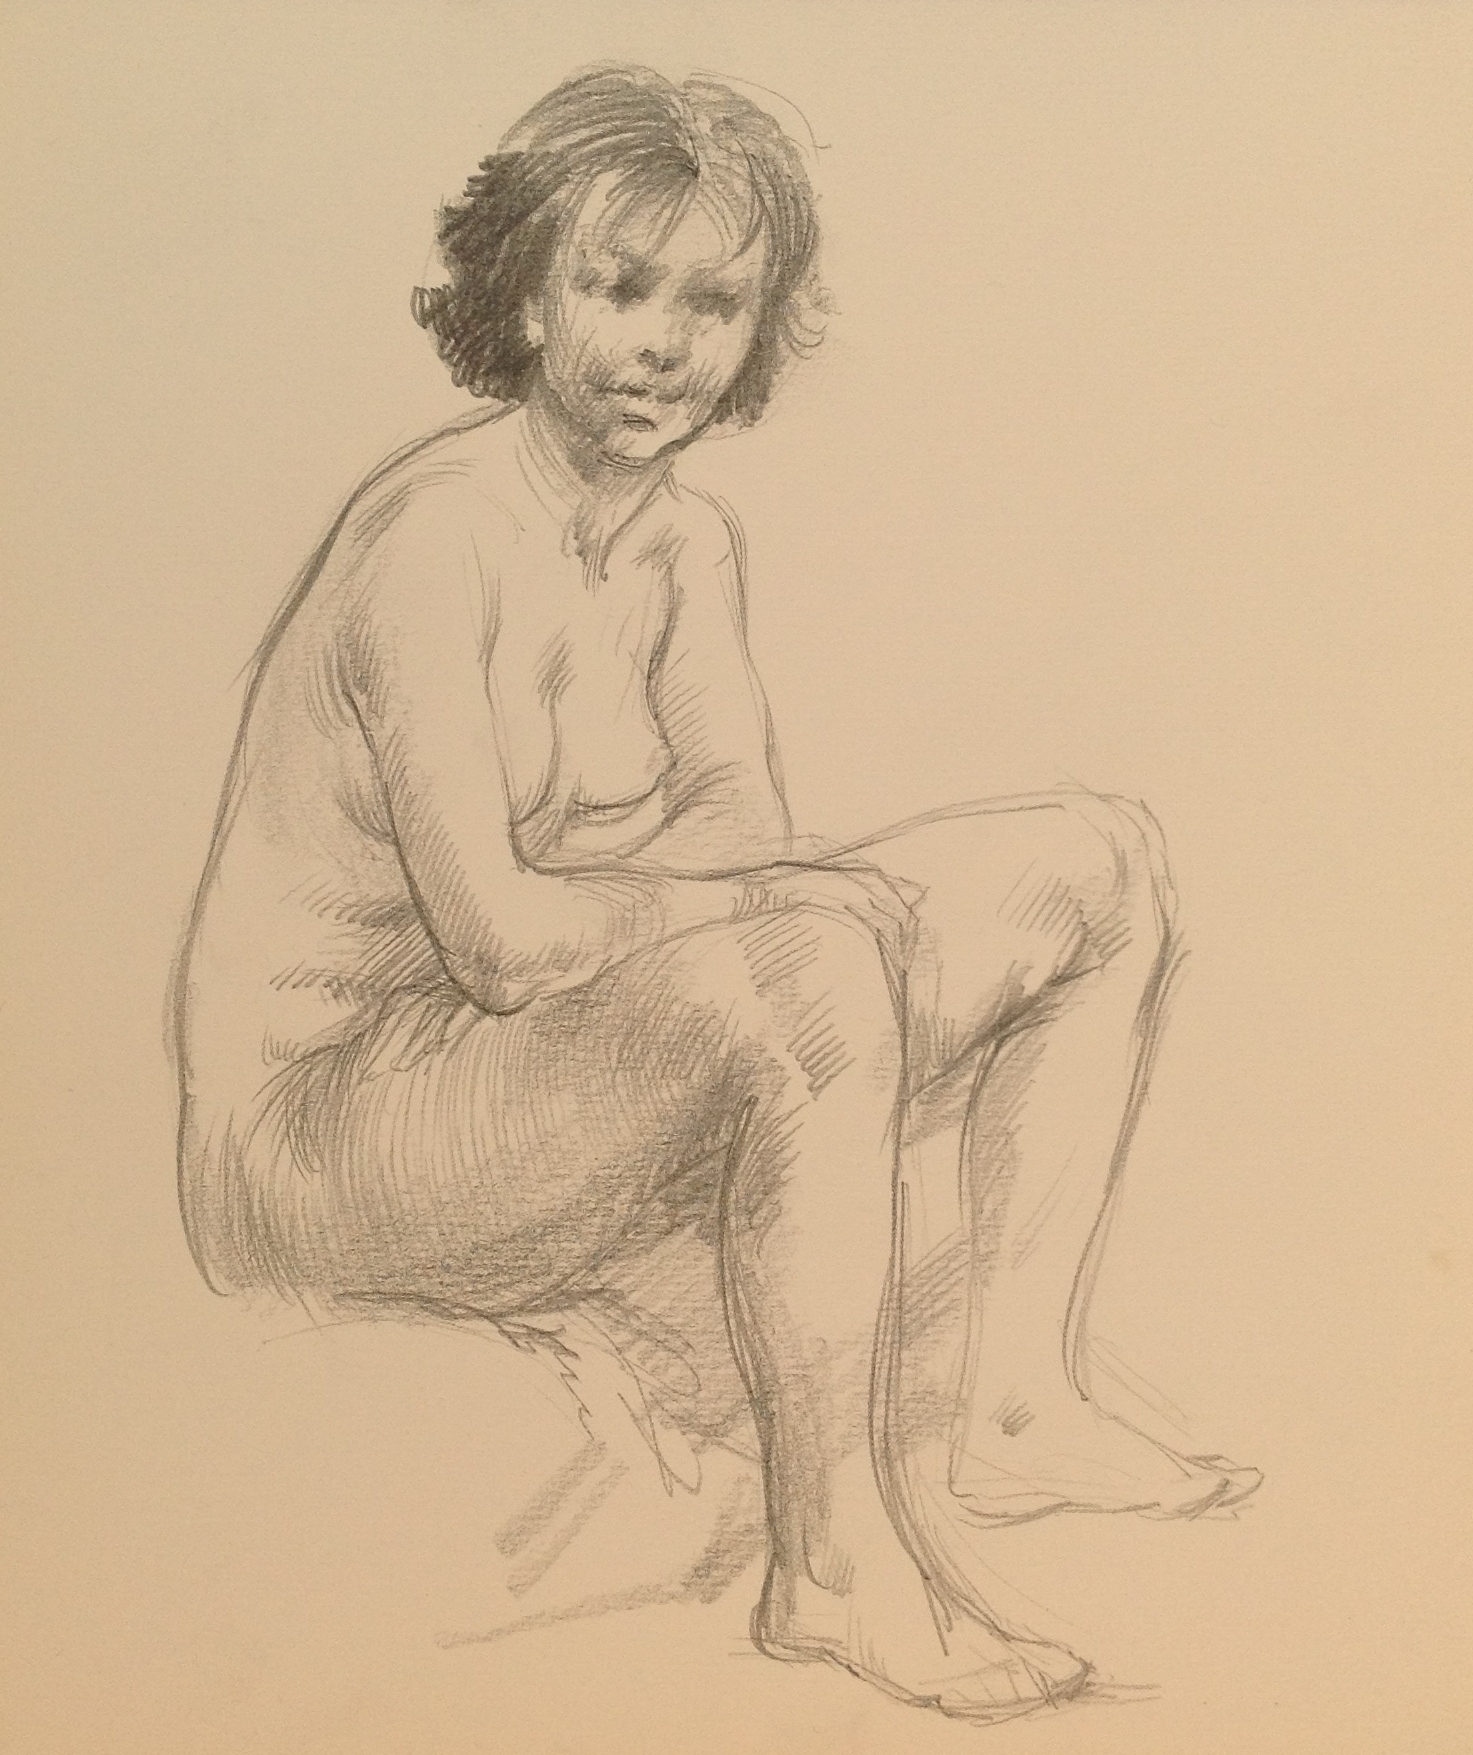 Nudo seduto, ritratto di donna nuda seduta di Gigi Busato. Disegno a matita su carta bianco e nero, collezione di famiglia